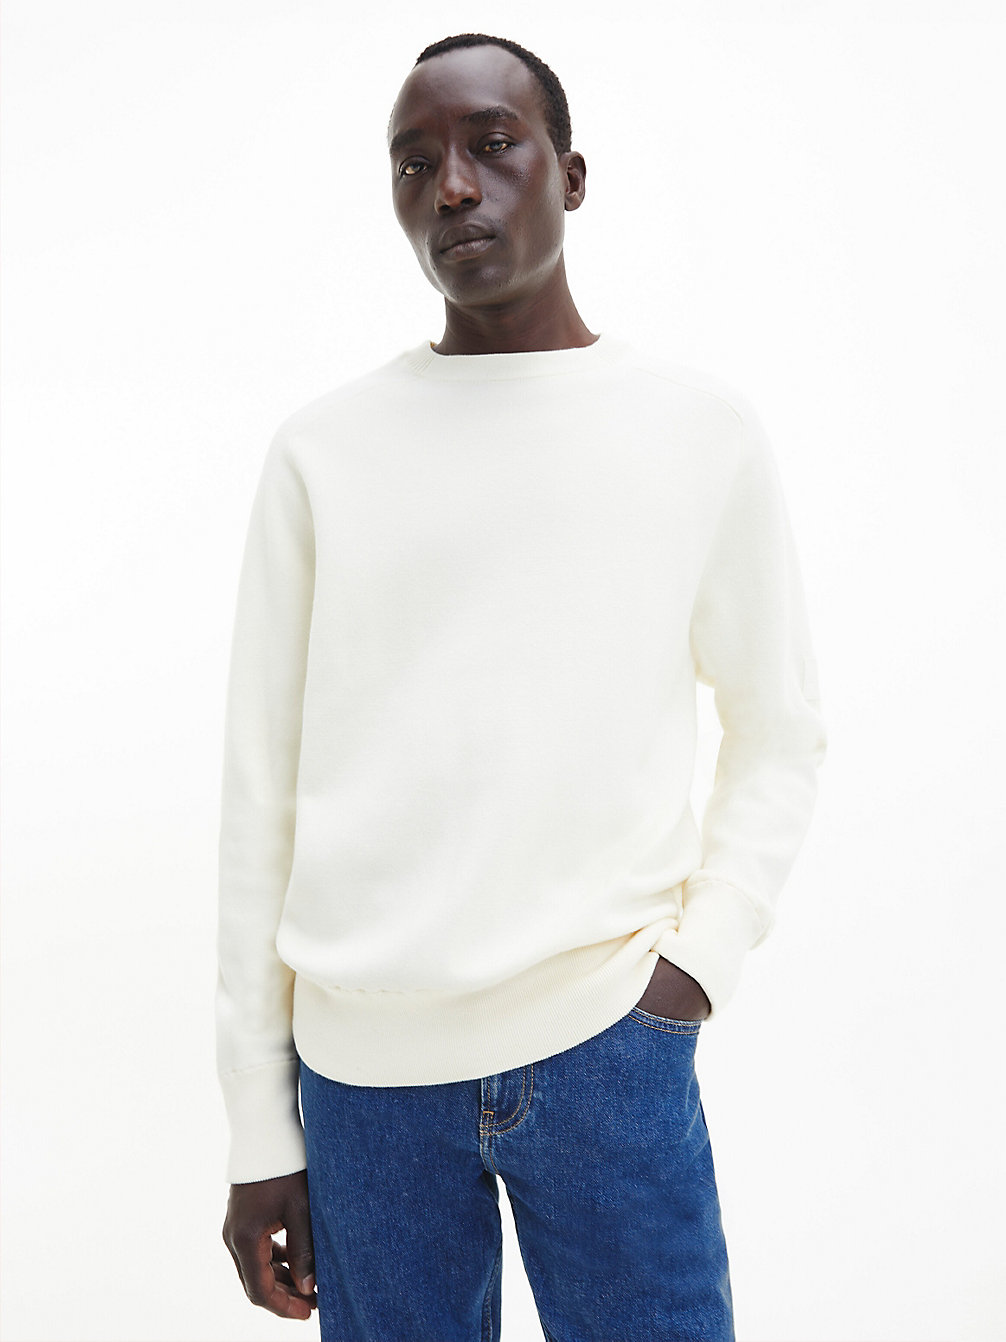 VANILLA ICE > Swobodny Sweter Z Ozdobnymi Szwami Milano > undefined Mężczyźni - Calvin Klein